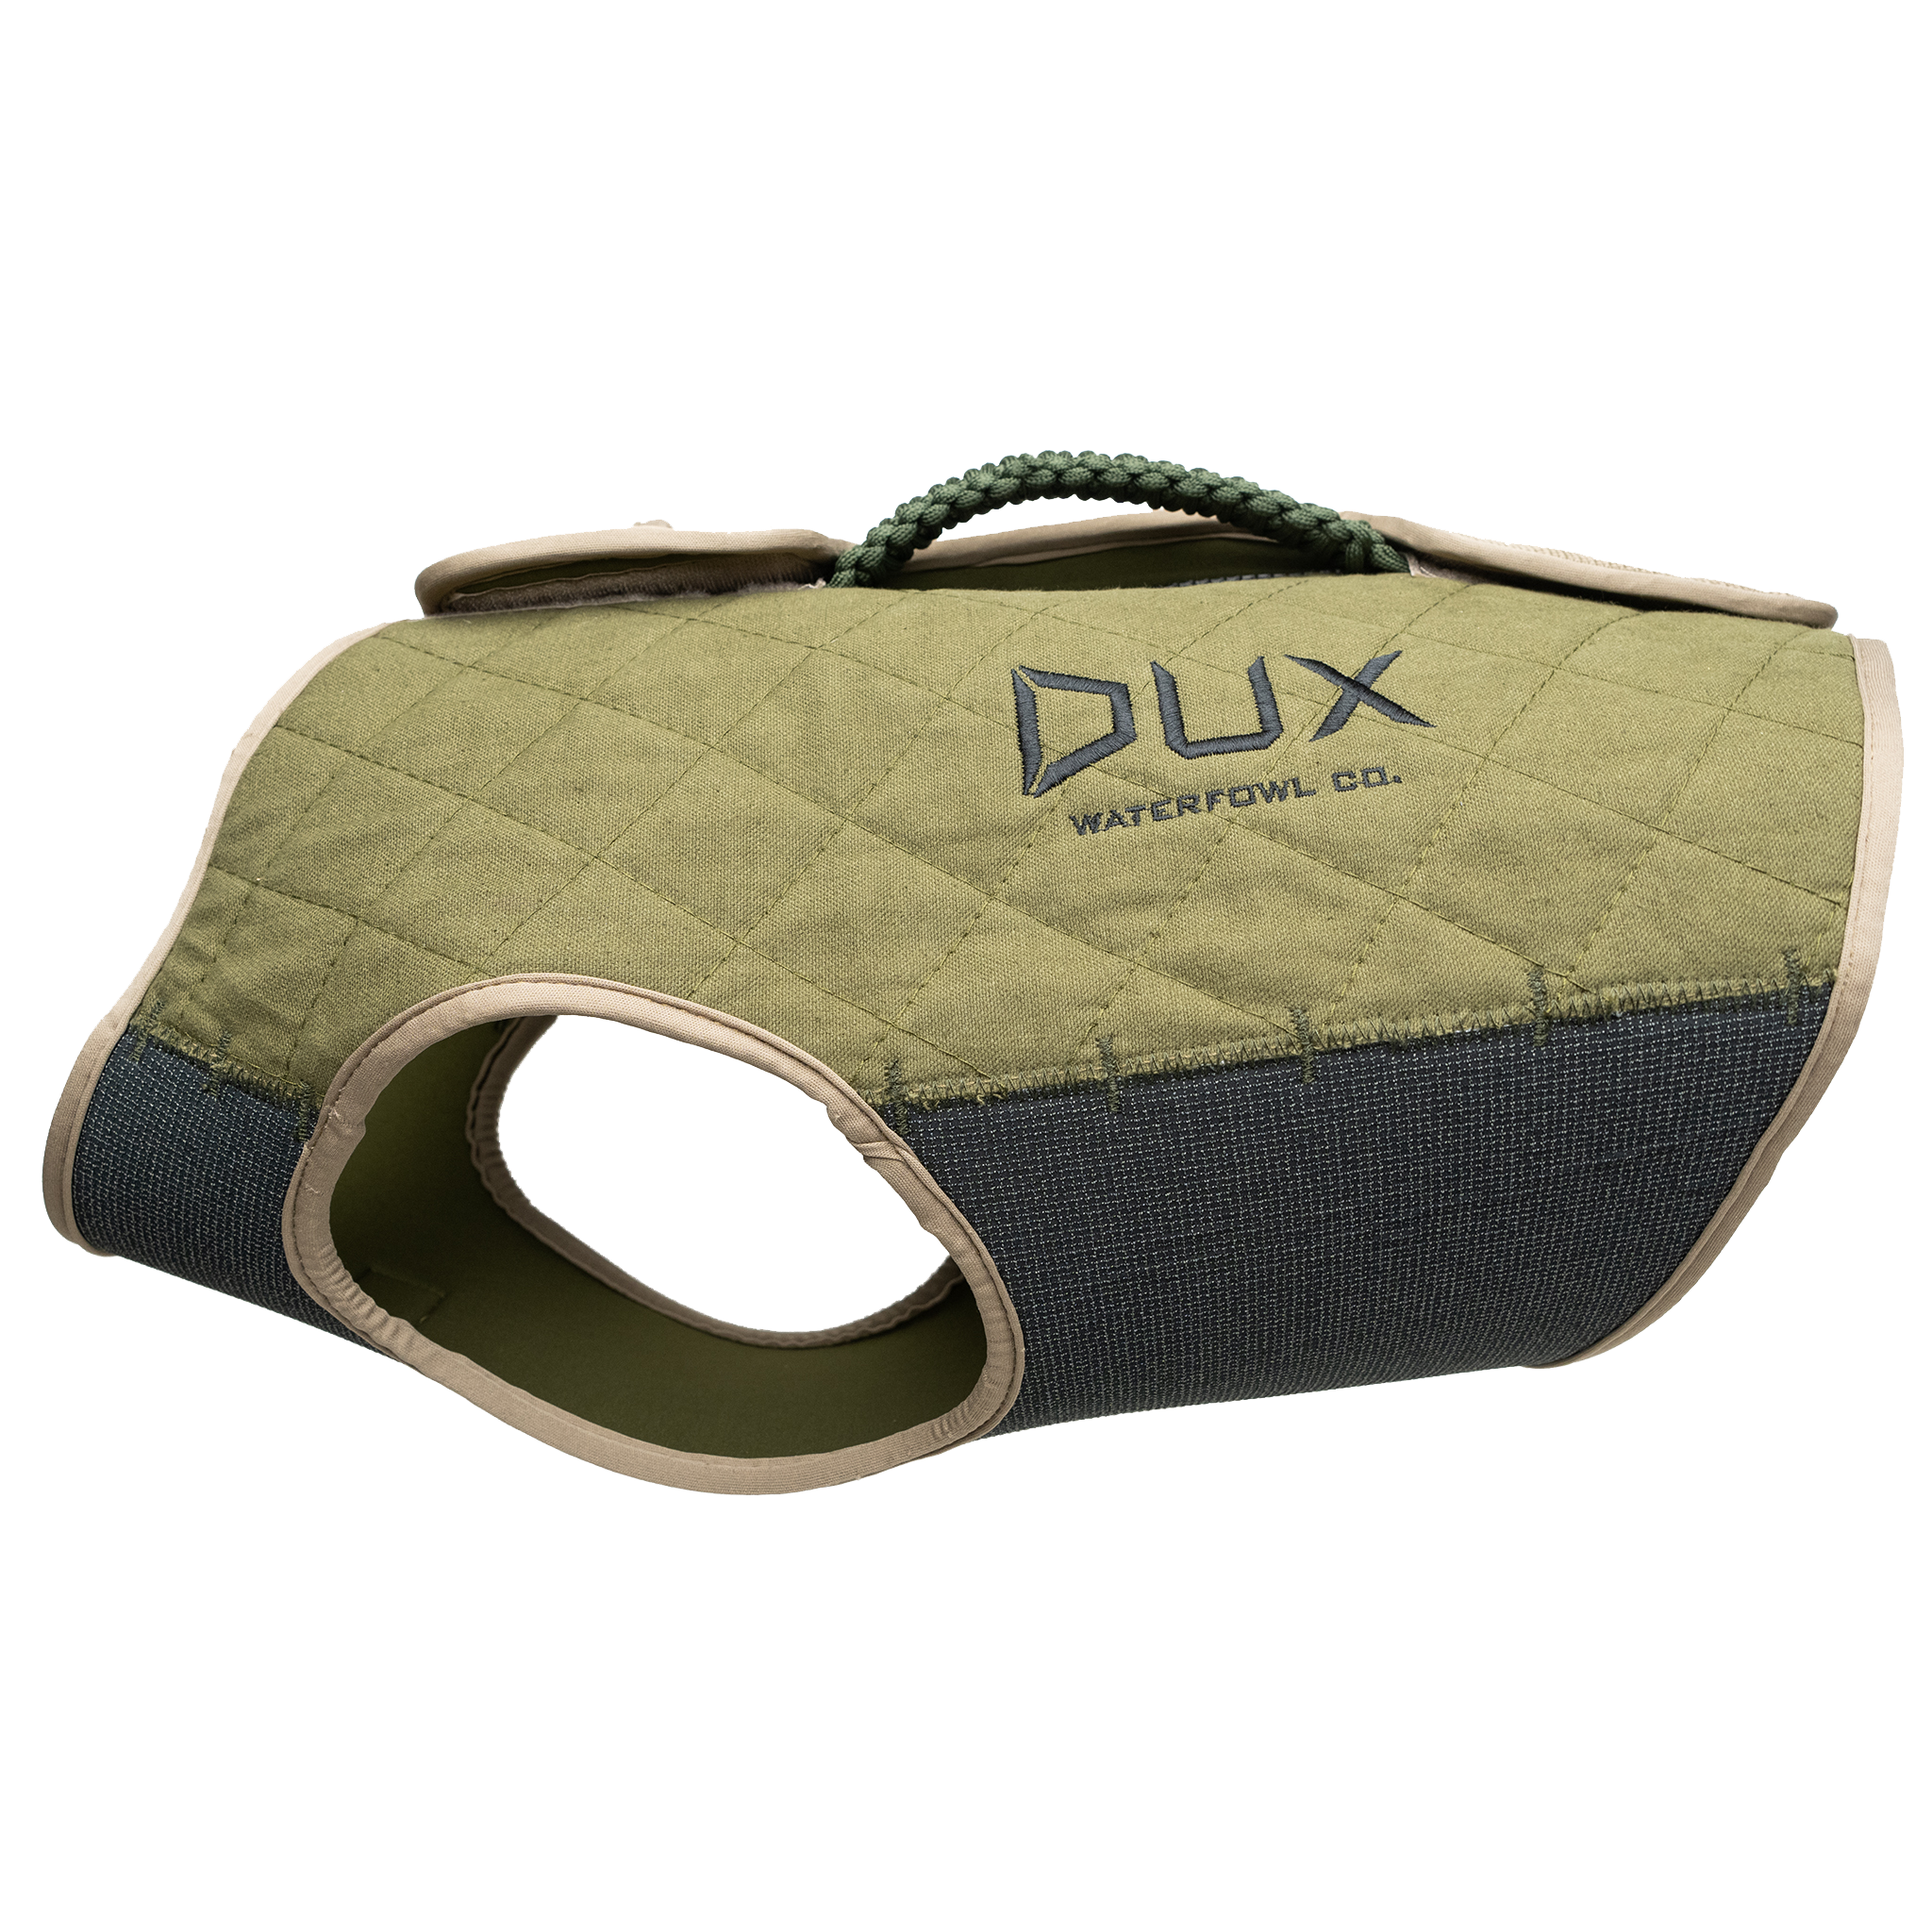 DUX NXT GEN Dog Vest